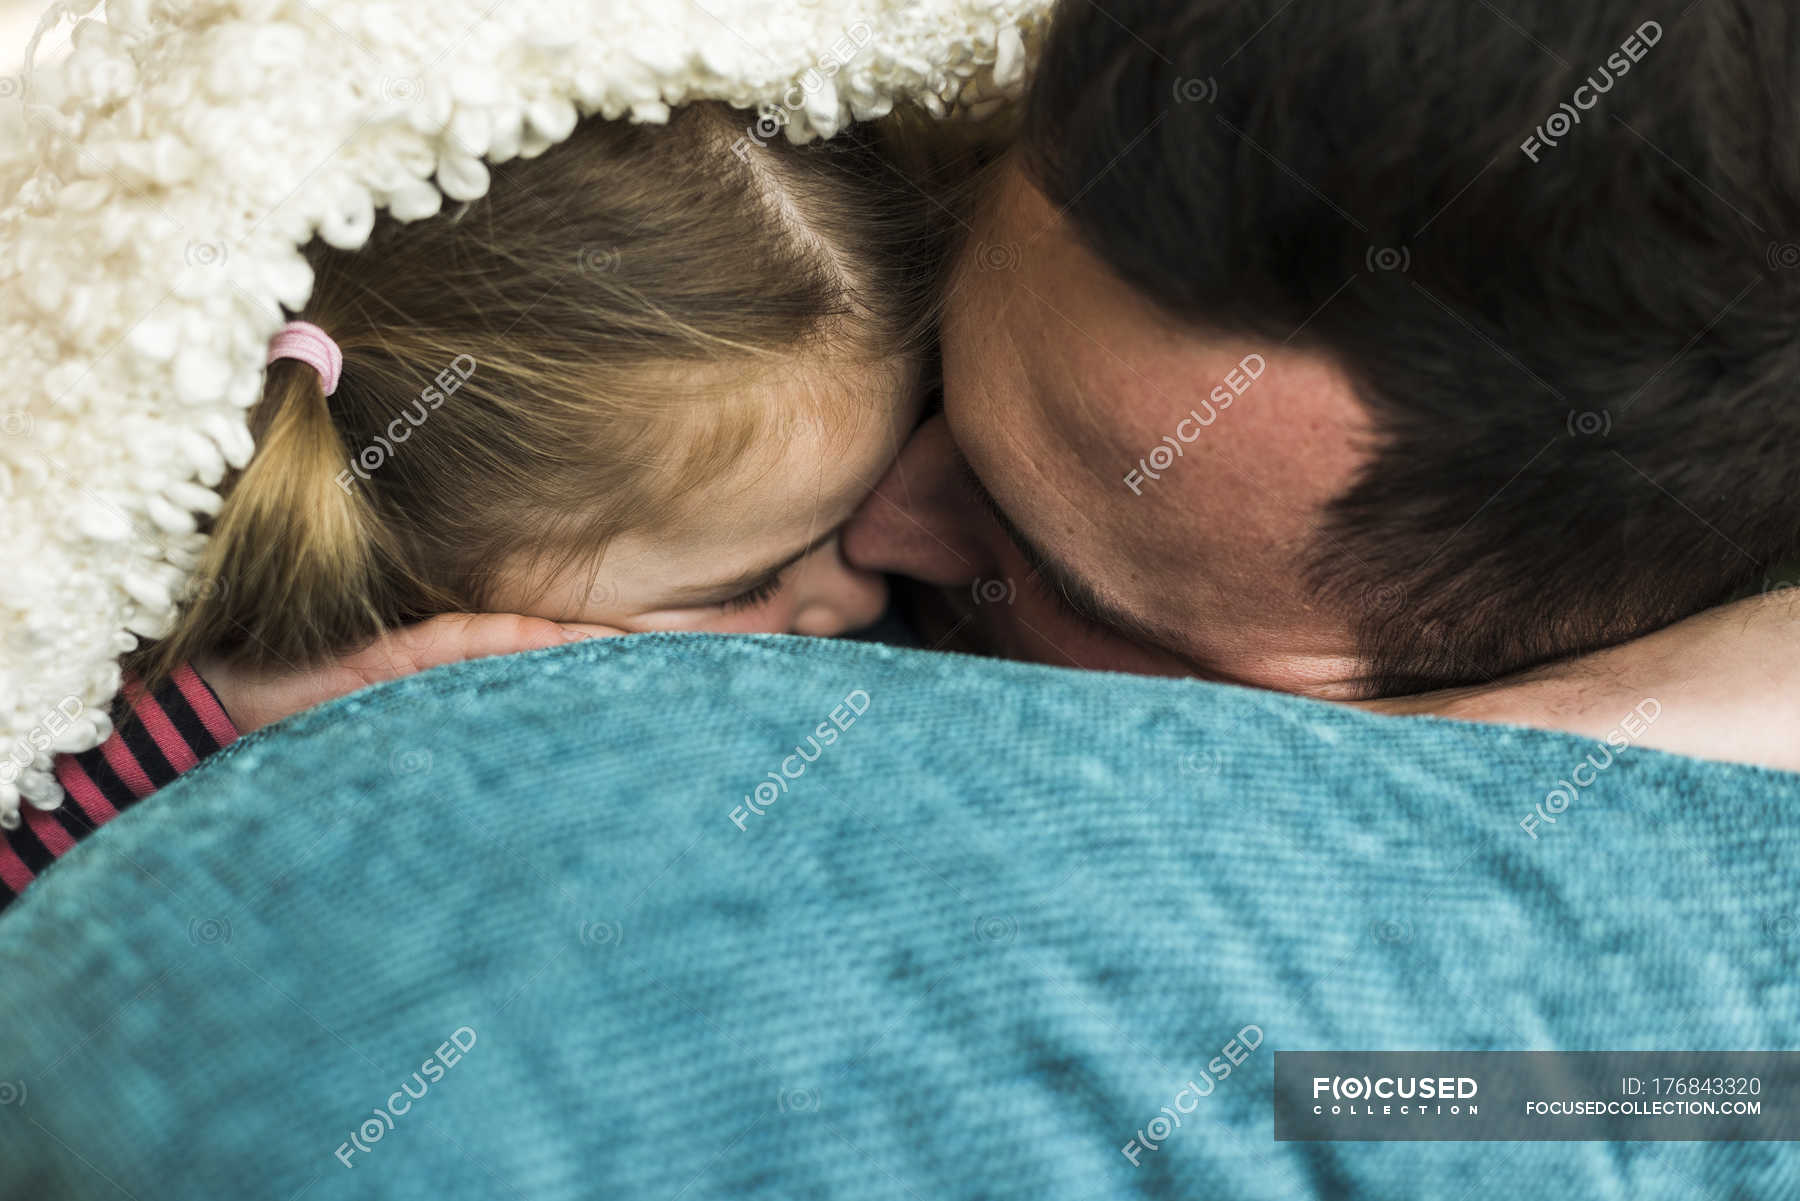 Папа залез дочке. Папа с дочкой спят в обнимку. Девушка обнимает отца.